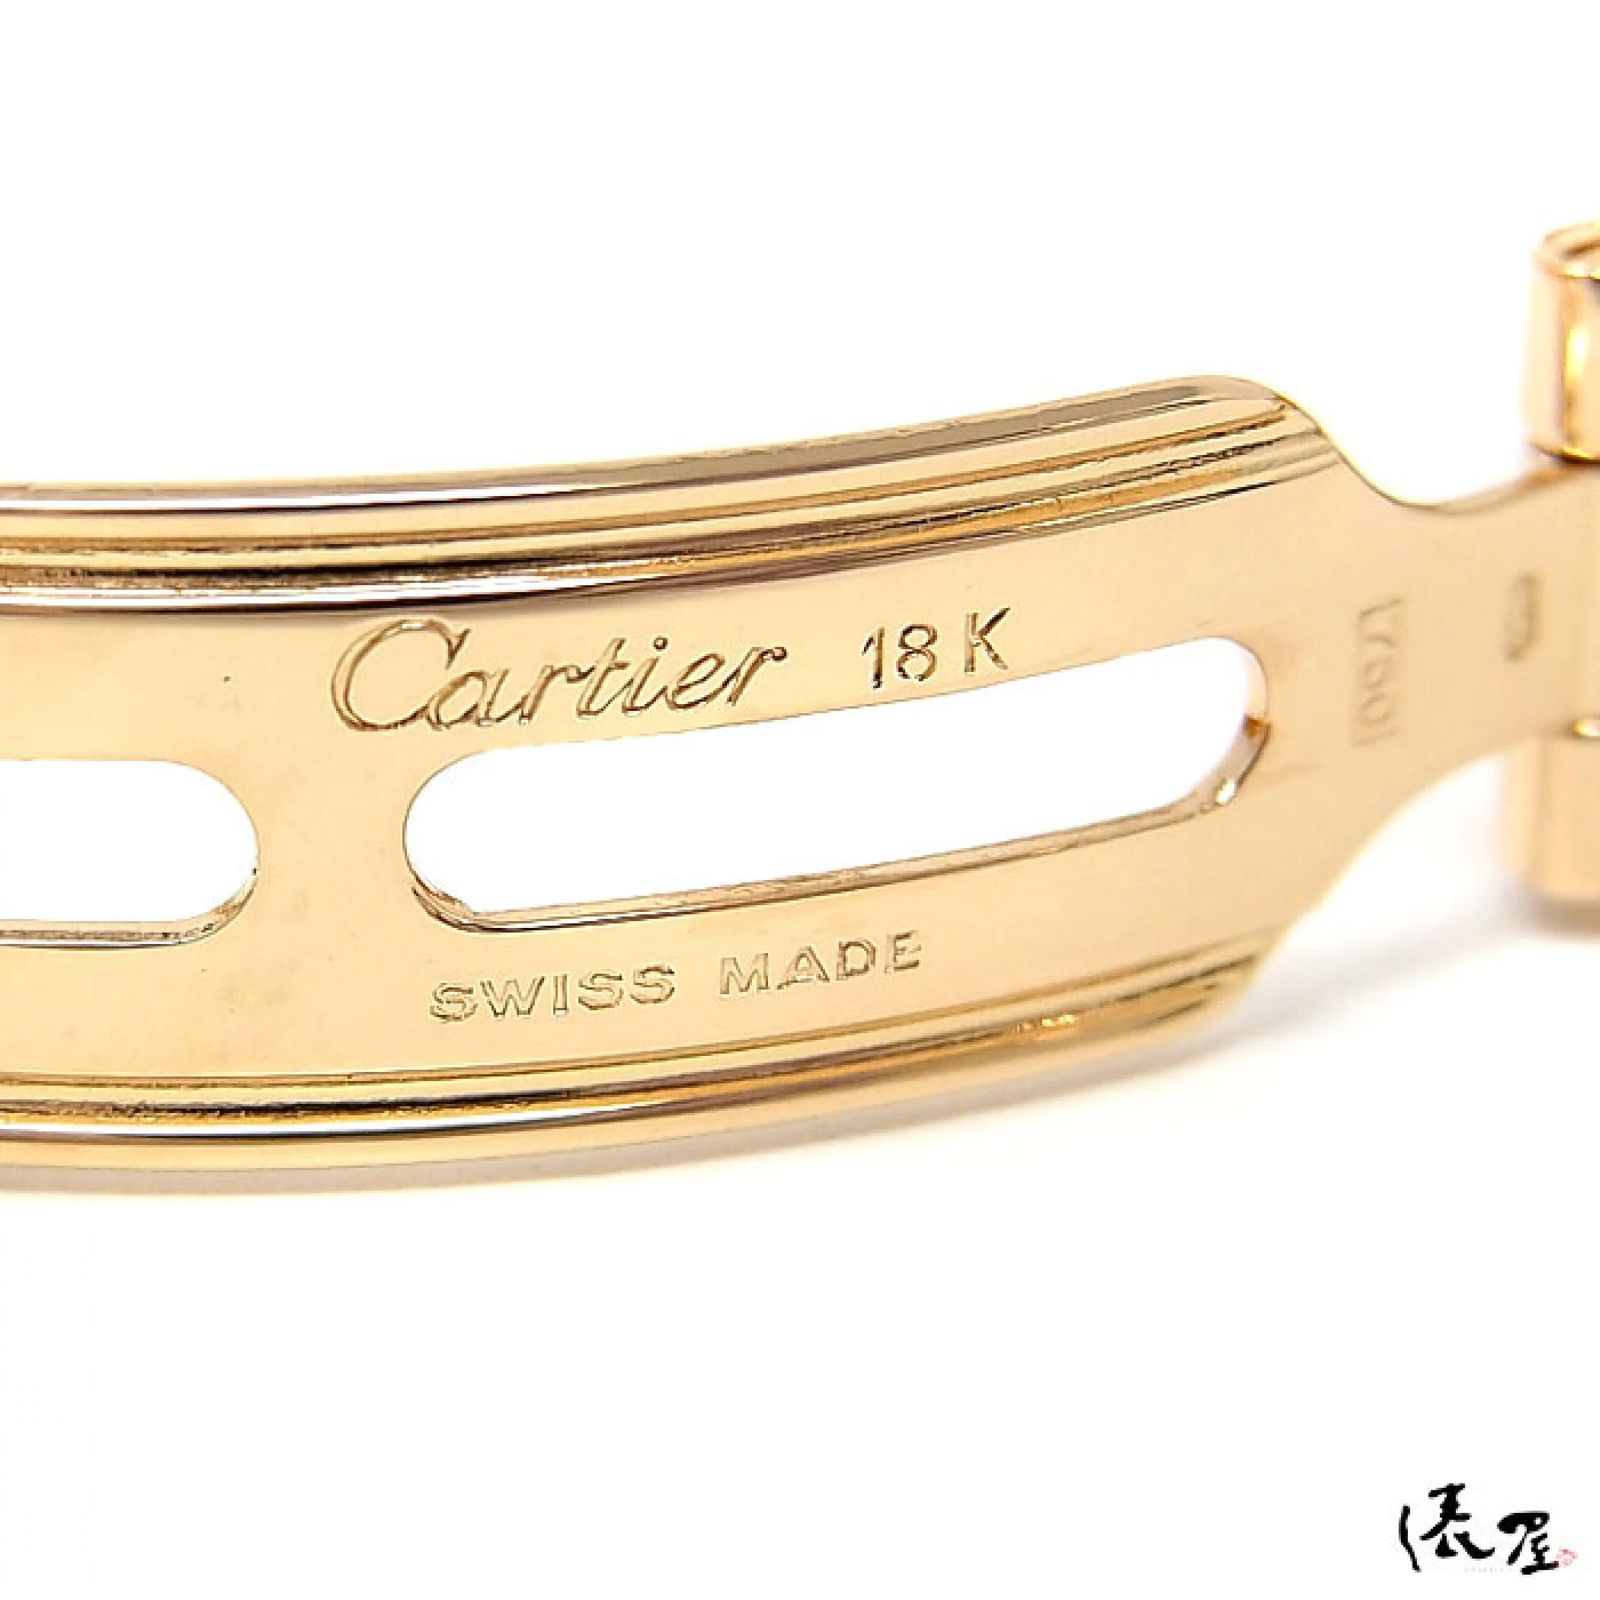 【仕上済/OH済】カルティエ K18YG ヴァンドーム LM ダイヤベゼル 極美品 アンティーク 金無垢 メンズ レディース Cartier 時計 腕時計 【送料無料】